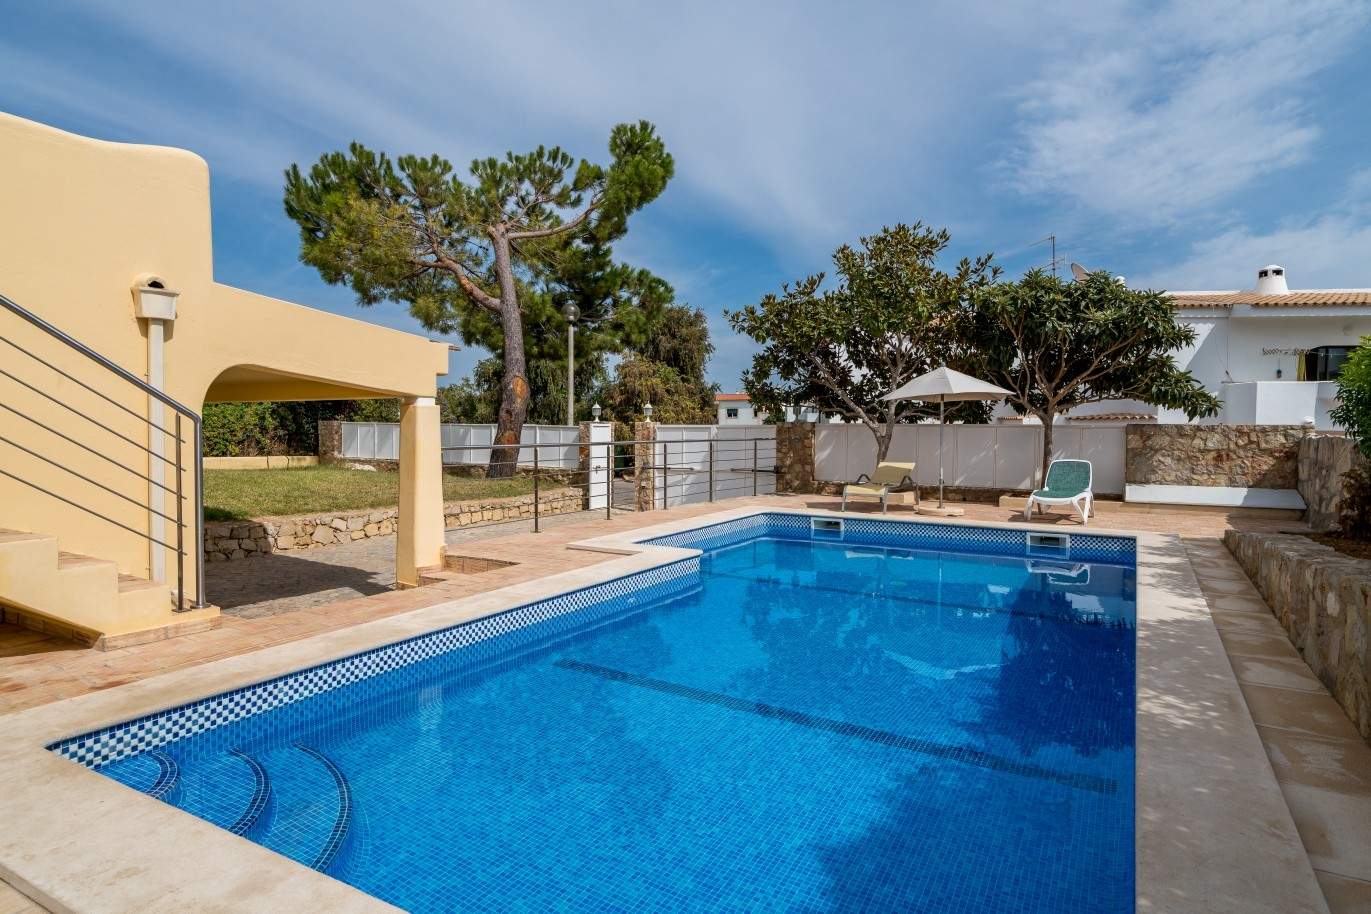 Moradia para venda, com piscina, perto da praia, Albufeira, Algarve_68464